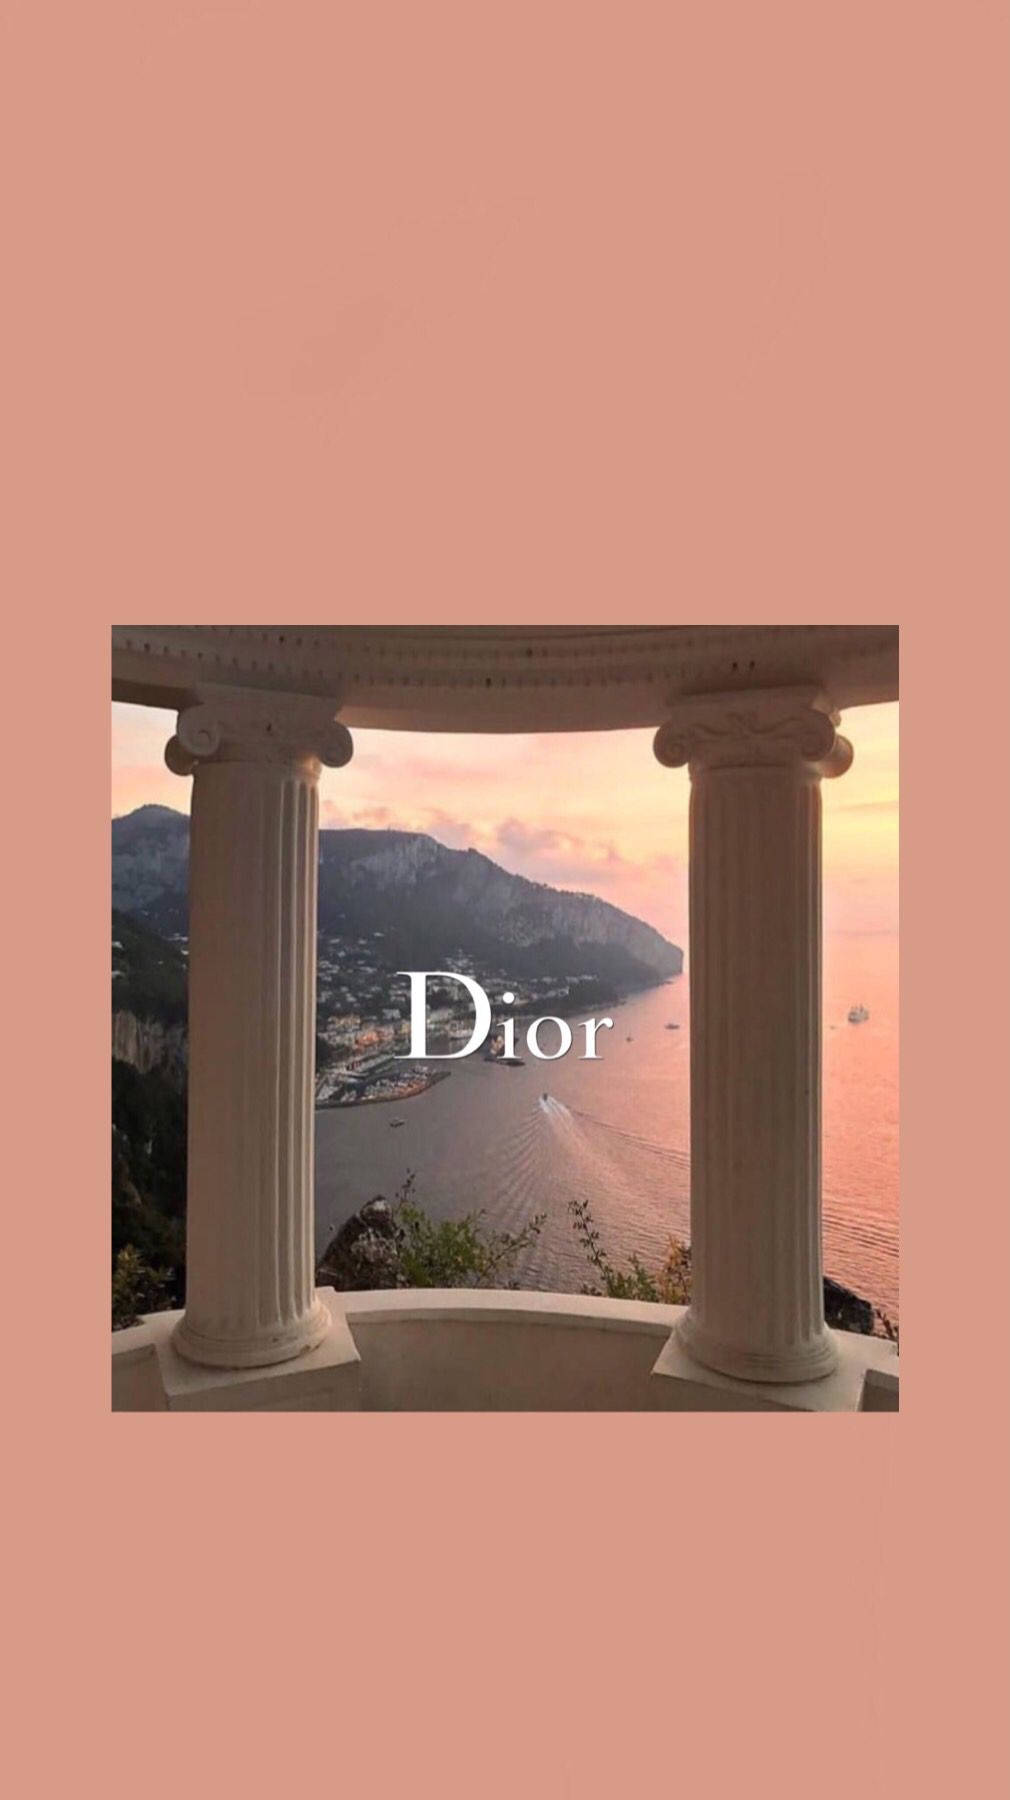 Dior Peach Pillars